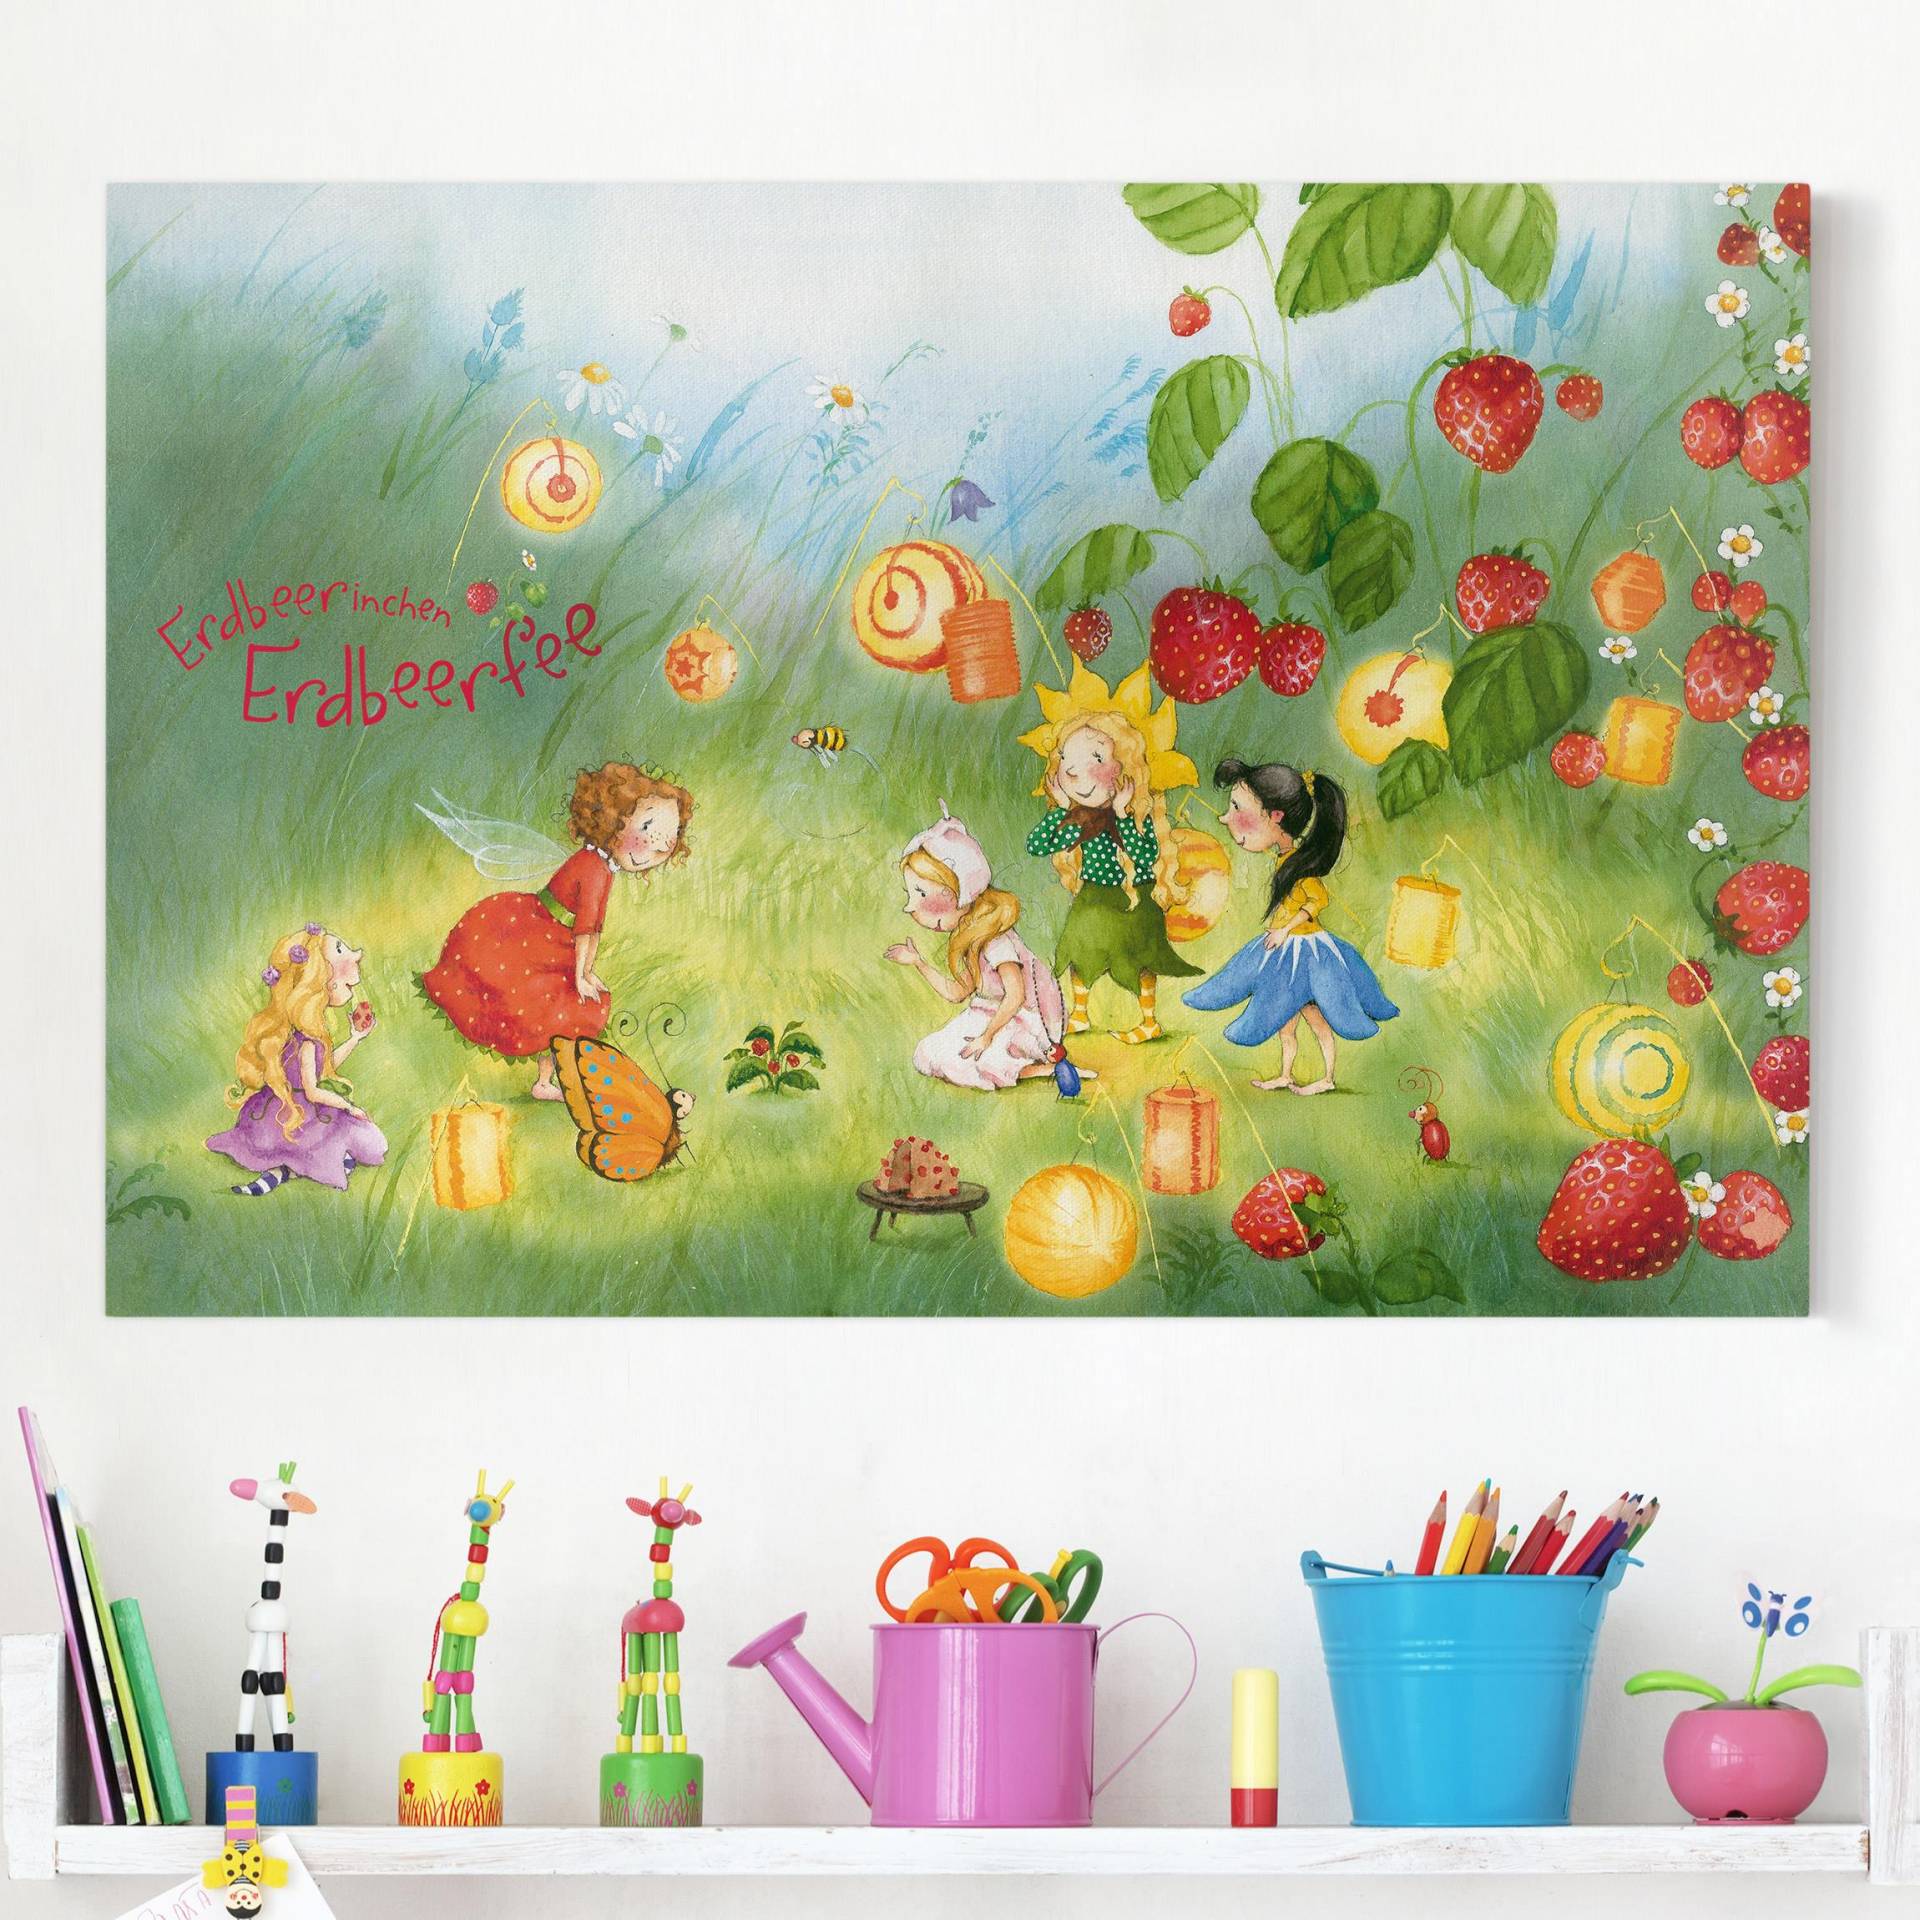 Leinwandbild Kinderzimmer Erdbeerinchen Erdbeerfee - Laternen von Klebefieber